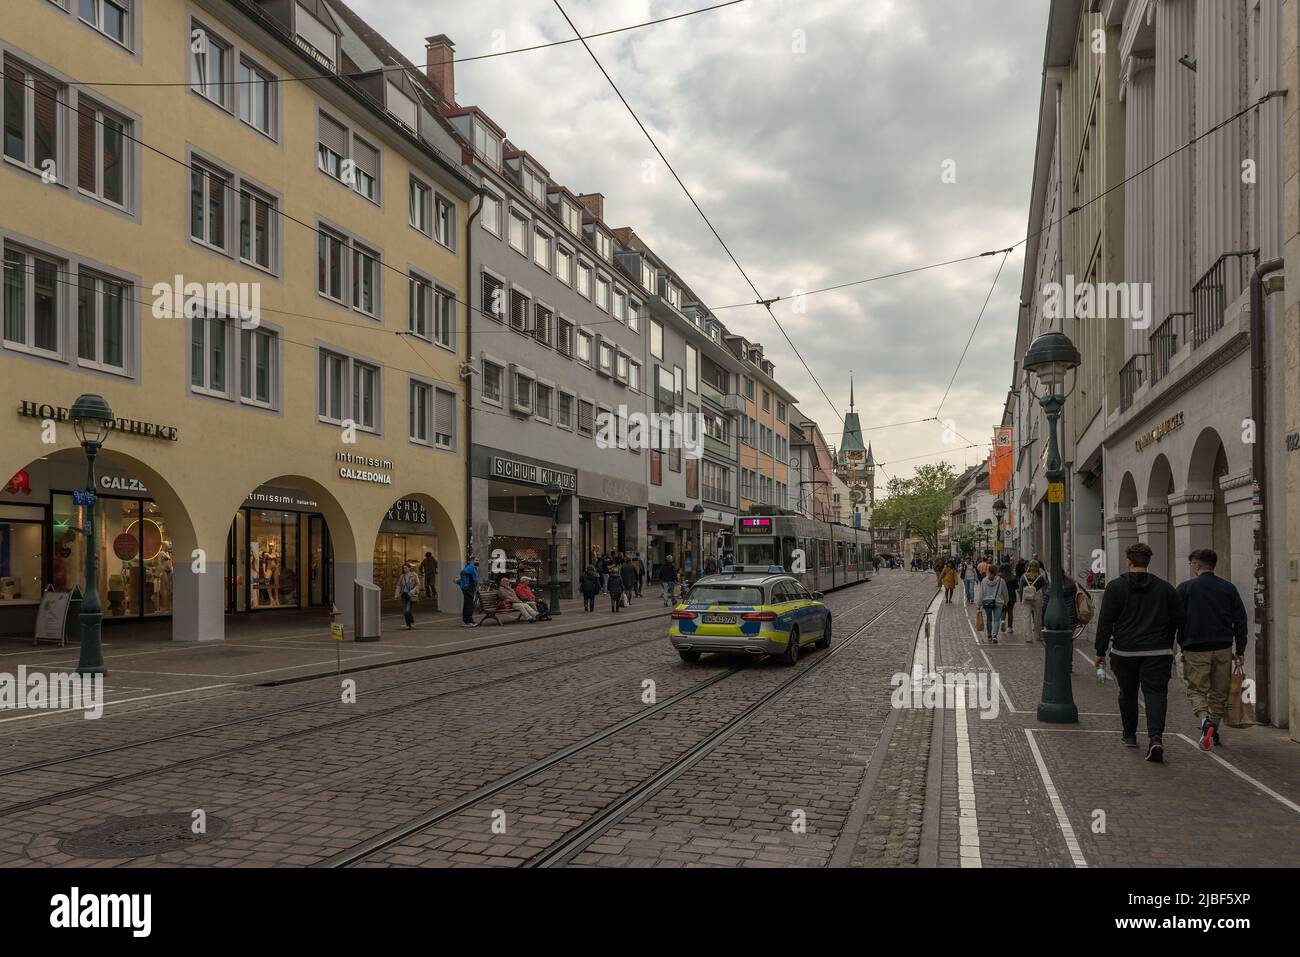 Straße mit Geschäften und Gebäuden in der historischen Altstadt, Freiburg, Deutschland Stockfoto